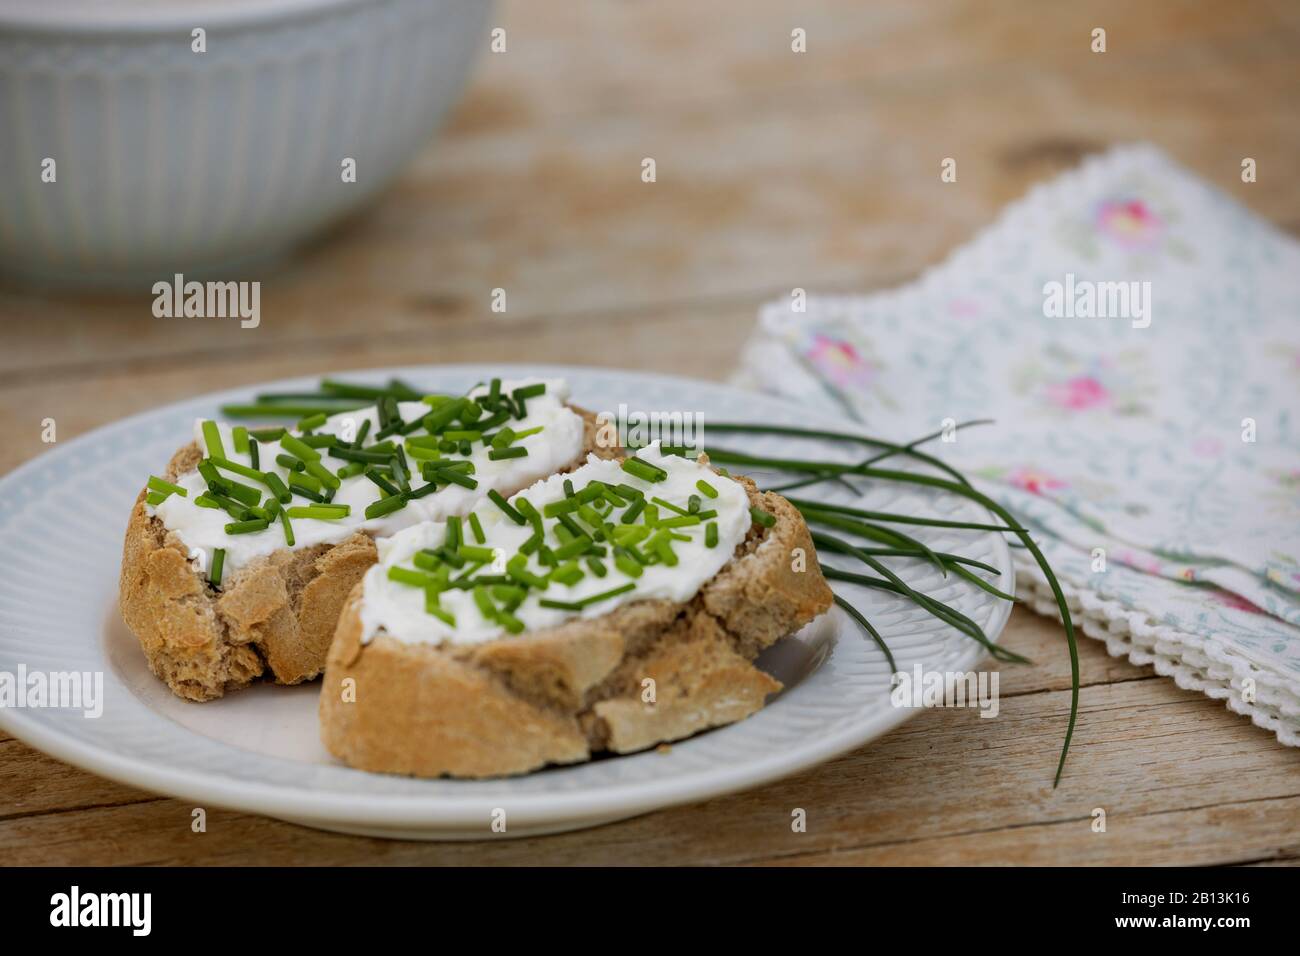 Schnittlauch, Sandleek (Allium schoenoprasum), Brotscheiben mit Quark und Schnittlauch Stockfoto